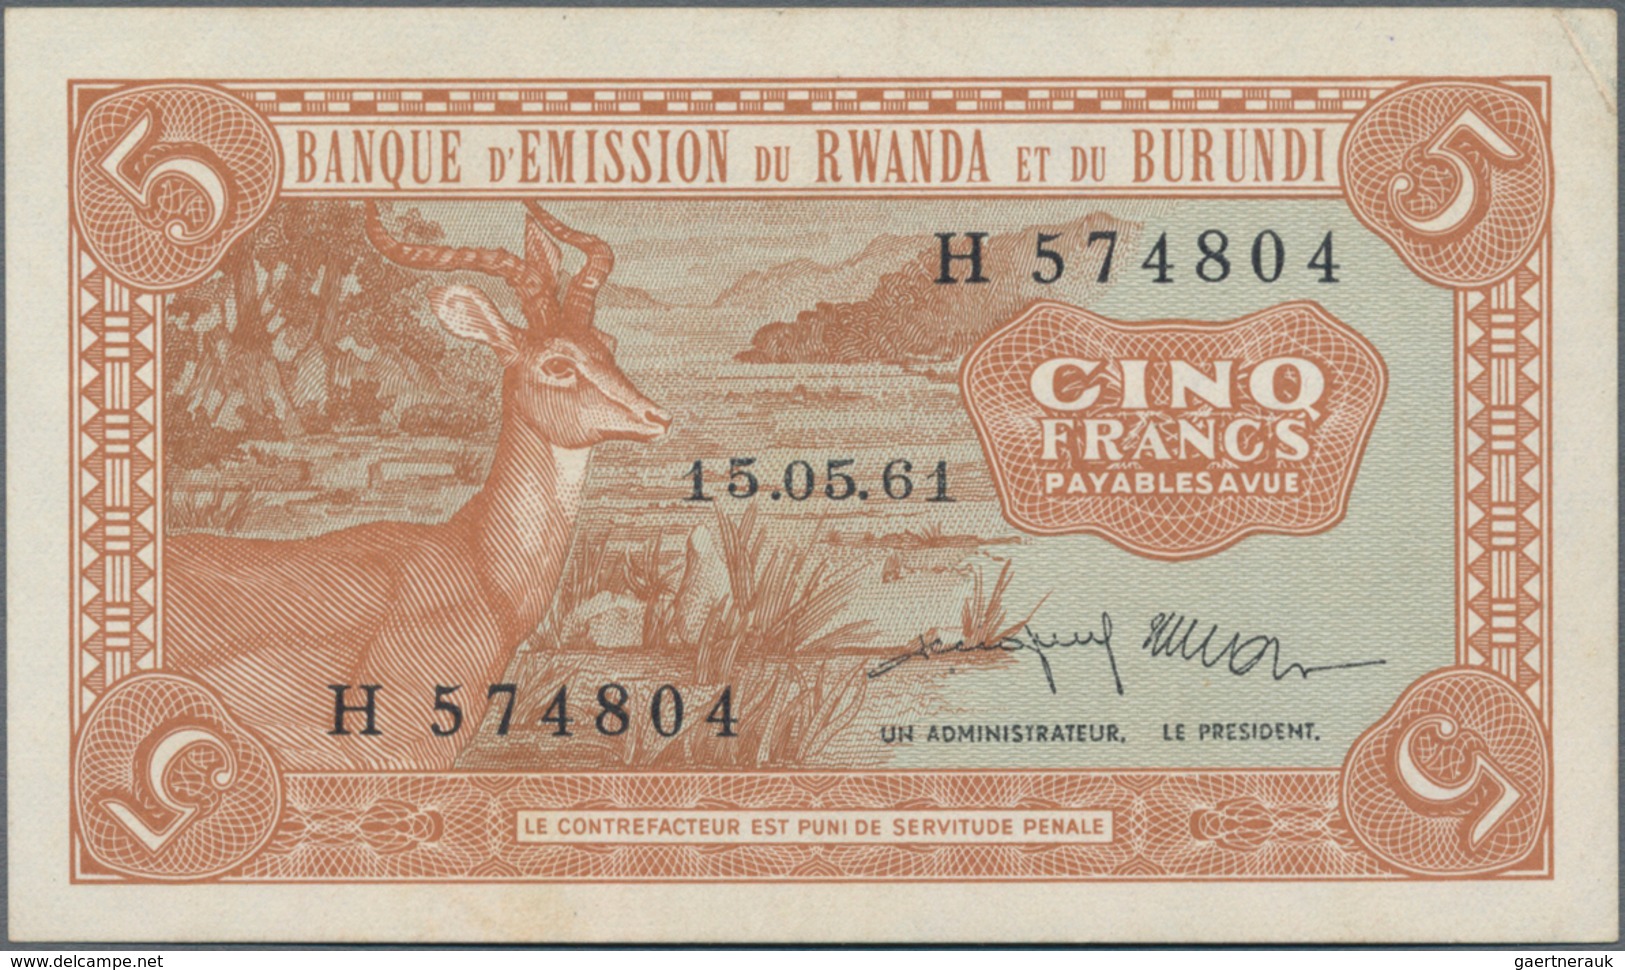 Rwanda-Burundi / Ruanda-Burundi: Banque D'Émission Du Rwanda Et Du Burundi 5 Francs 1961, P.1, Very - Ruanda-Urundi